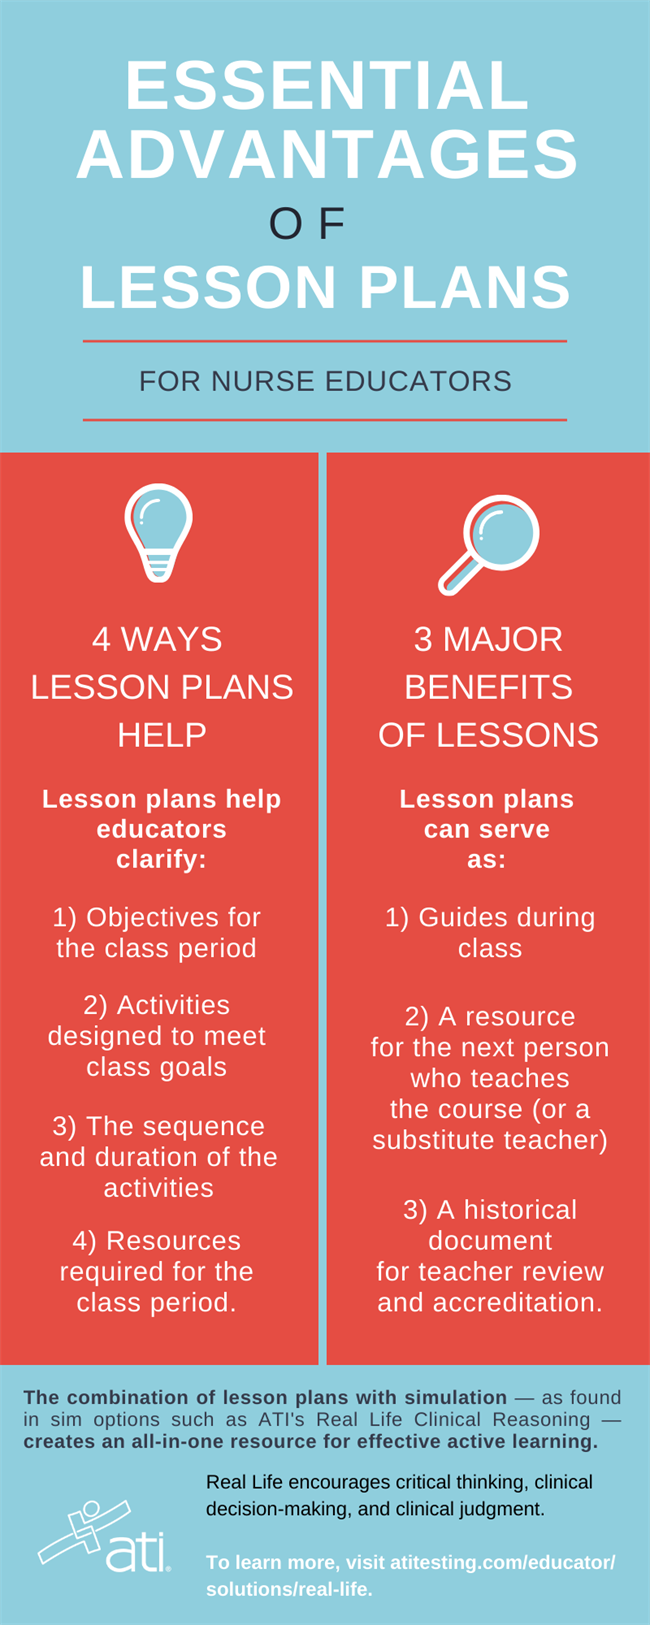 Essential advantages of lesson plans infographic